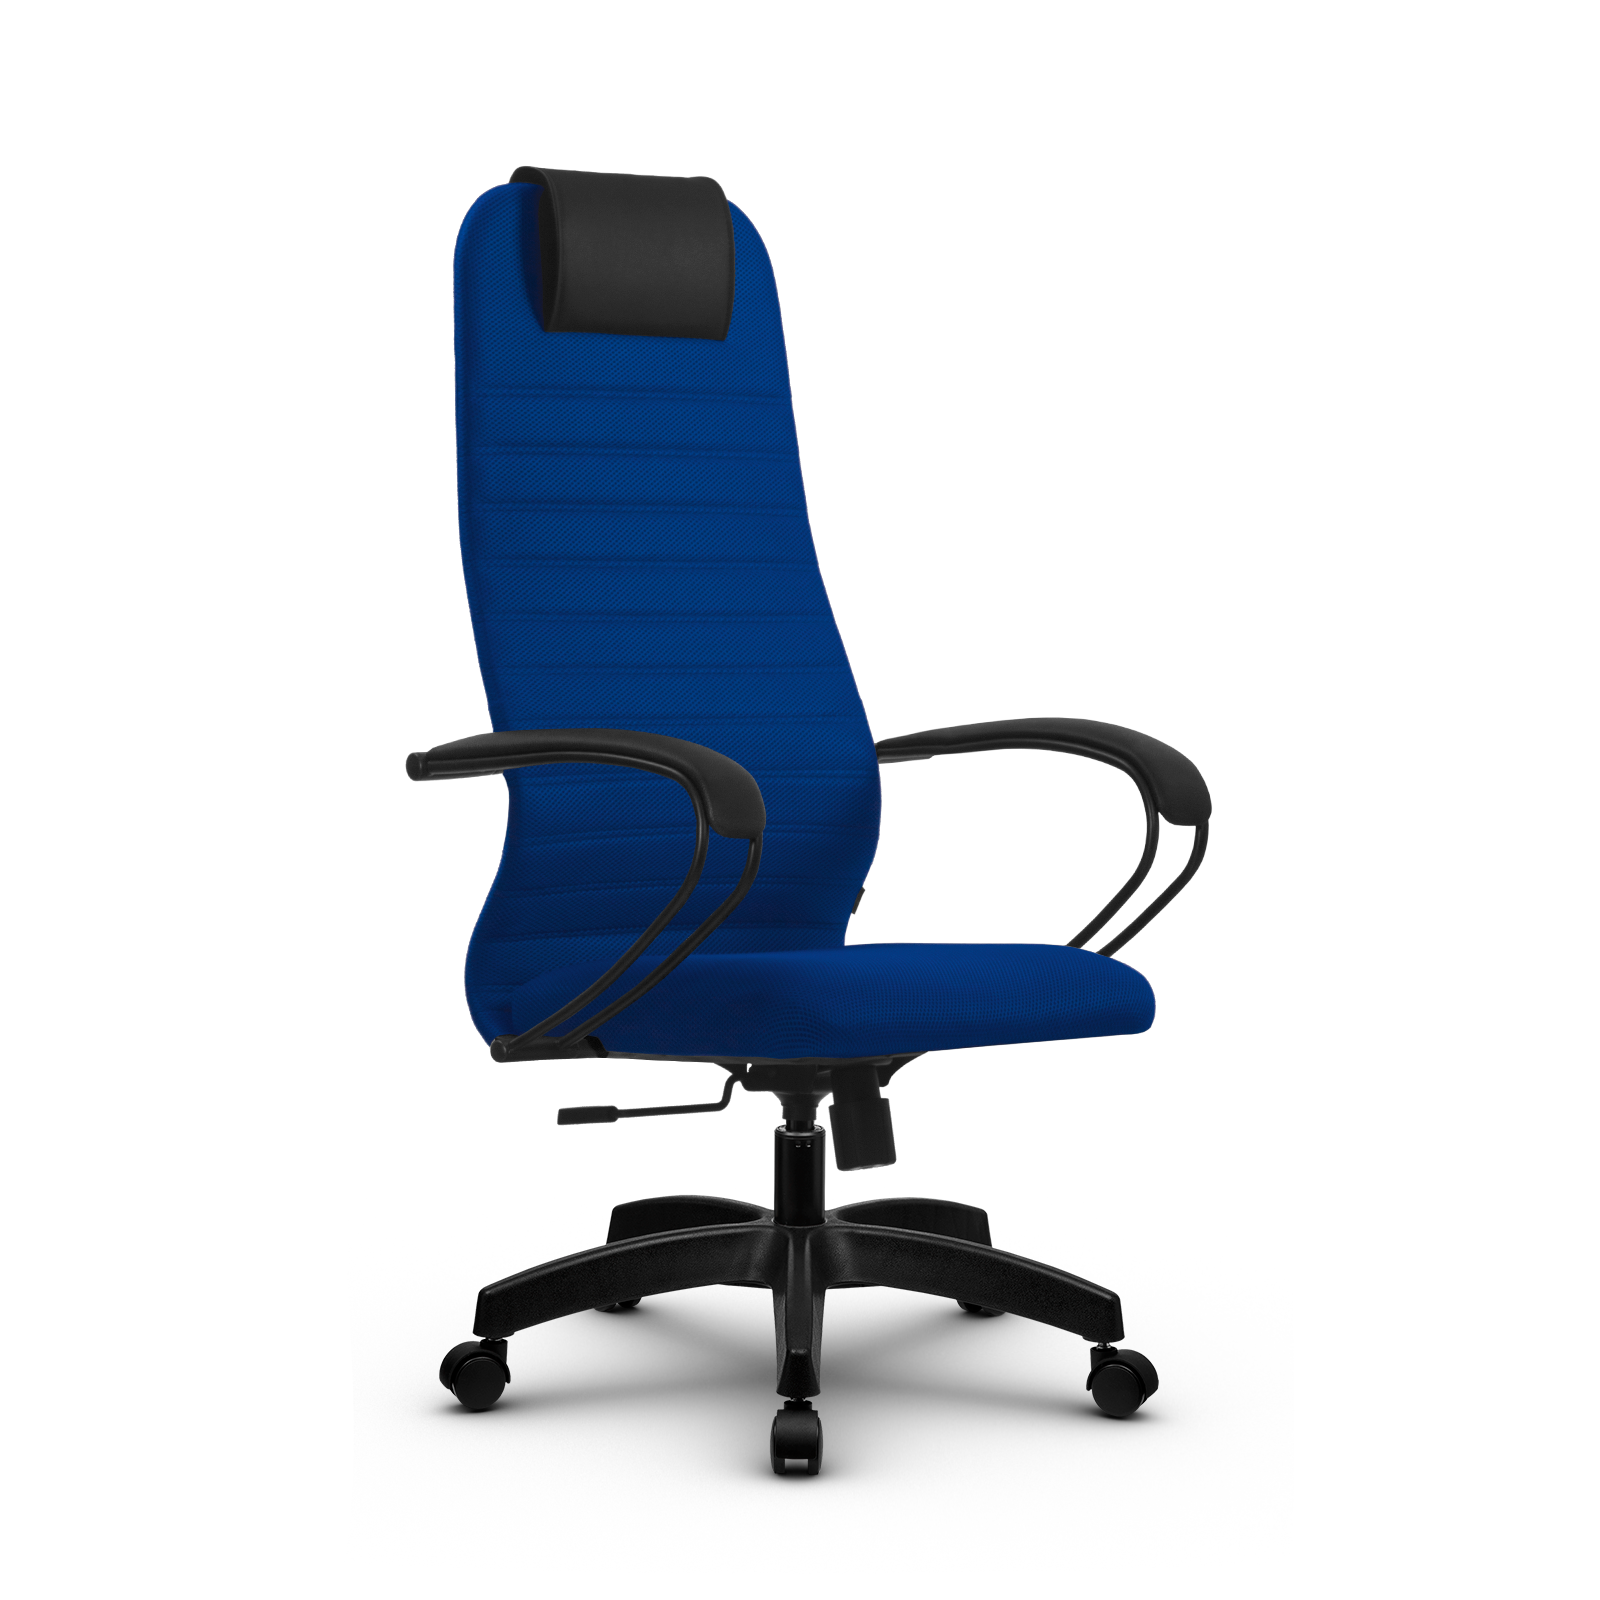 90488603 Офисное кресло Su z312457193 прочный сетчатый материал цвет синий STLM-0248481 МЕТТА